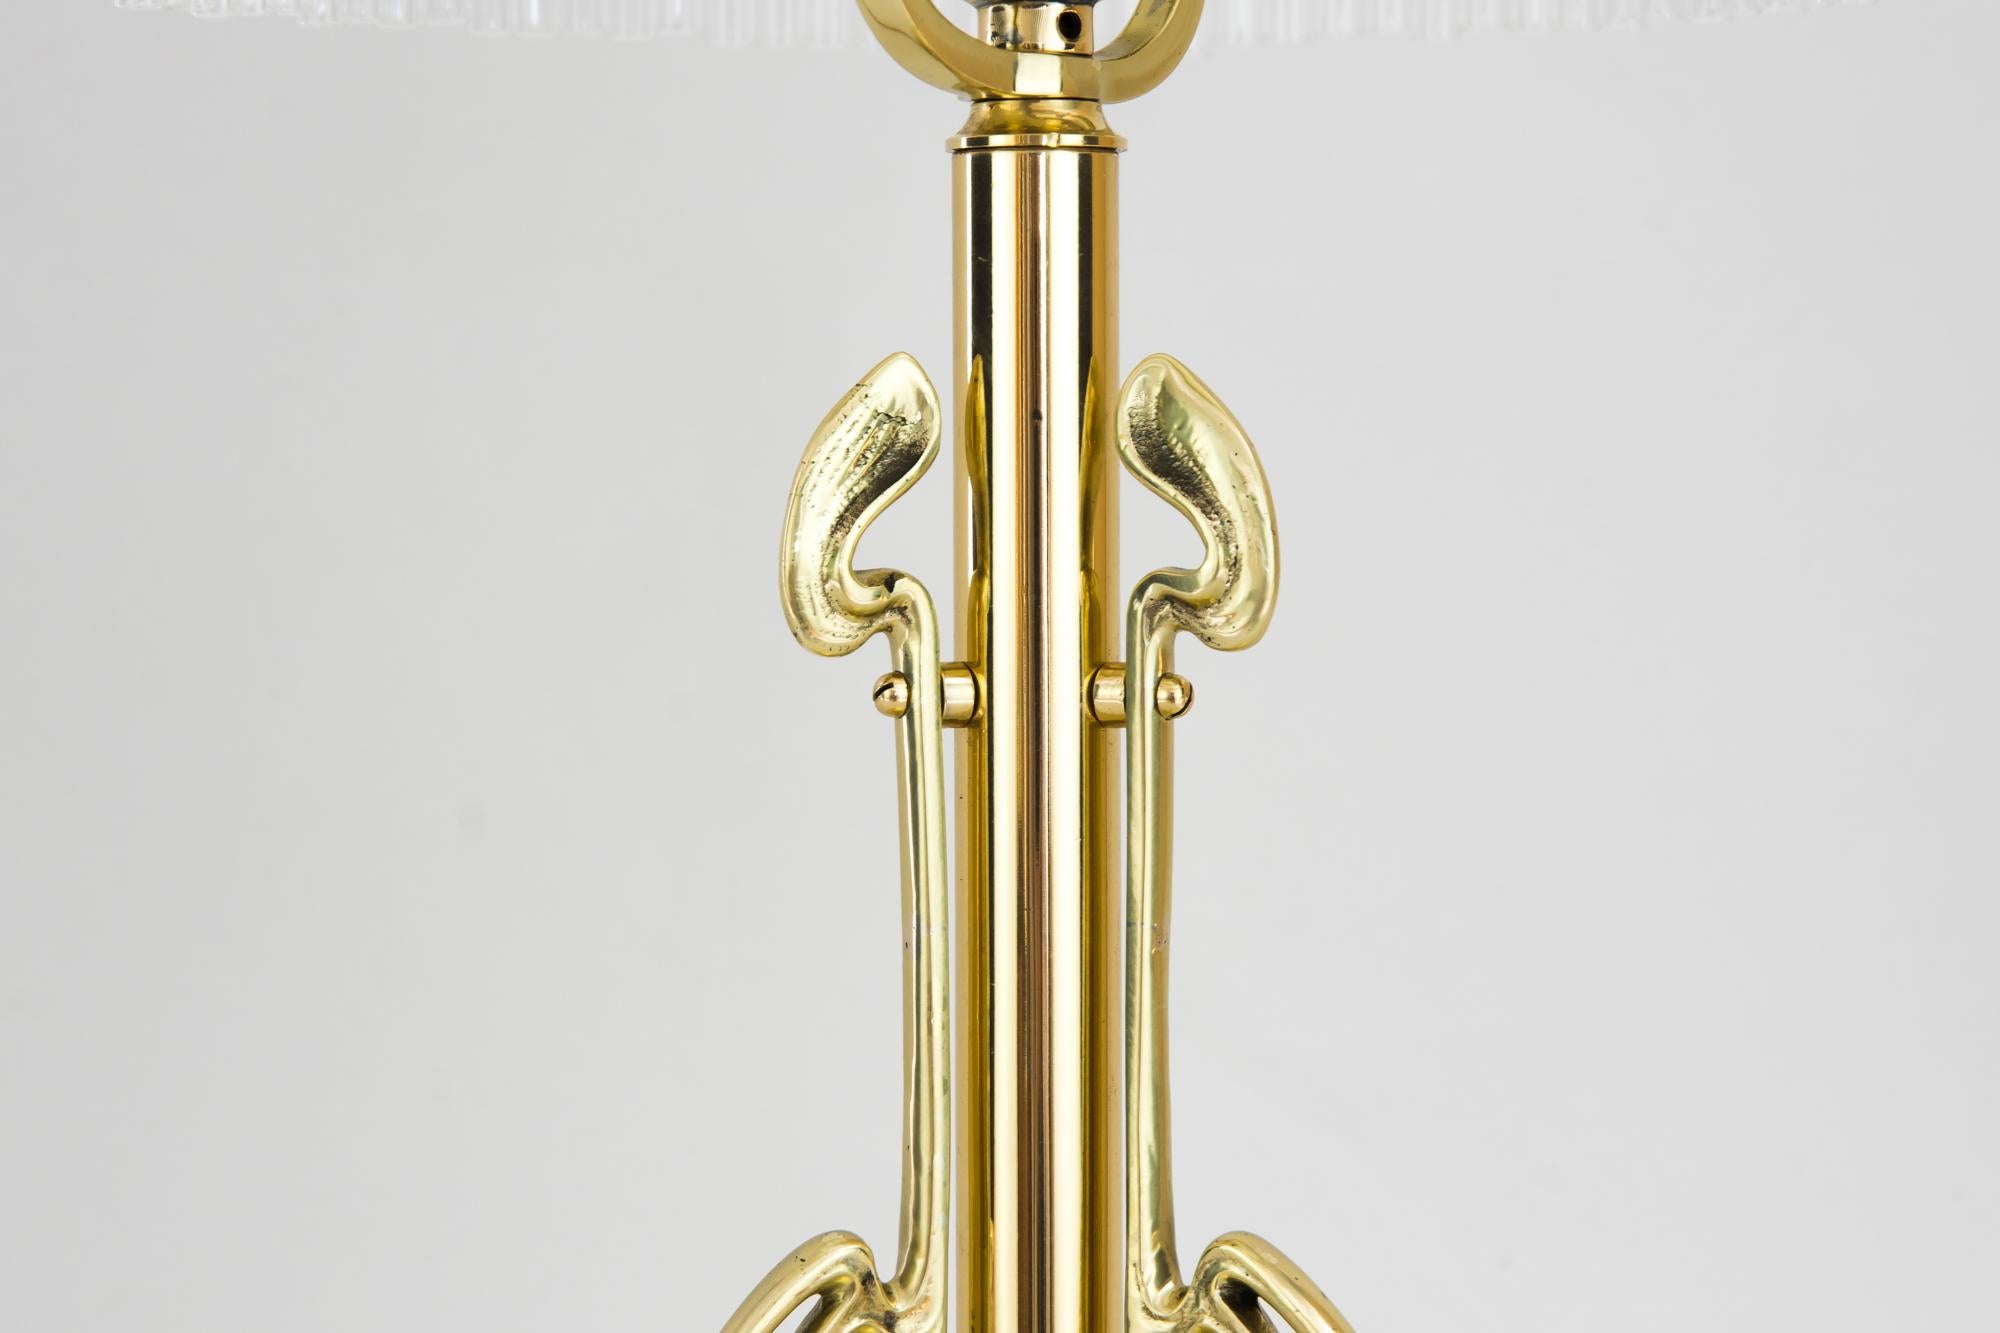 Brass Jugendstil Table Lamp with Original 